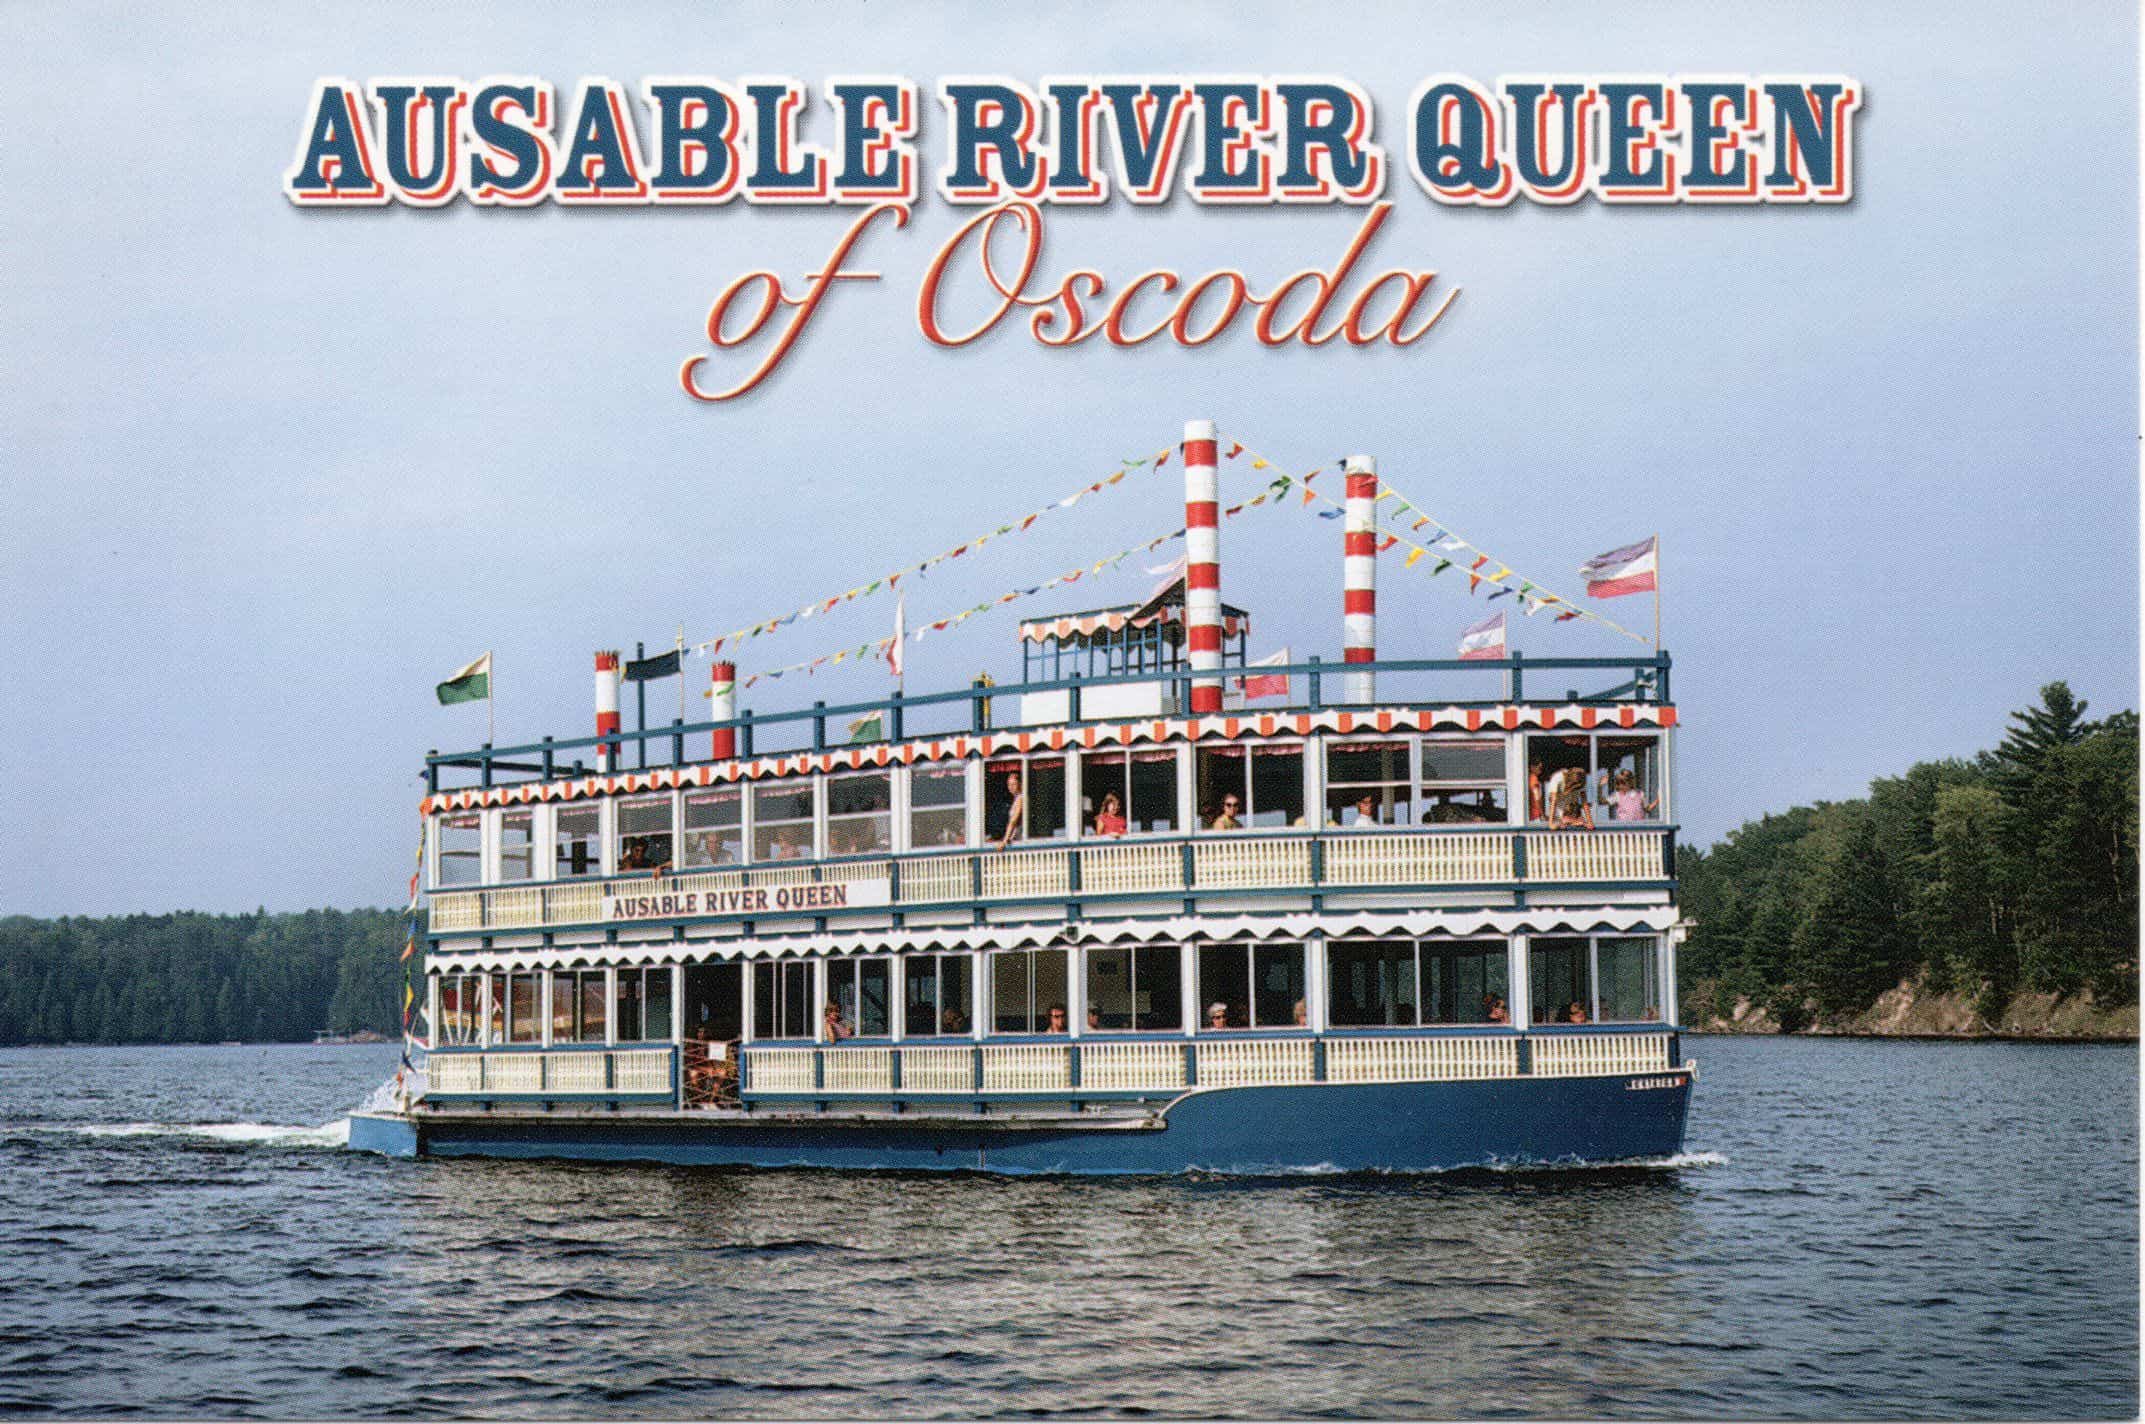 river queen cruise